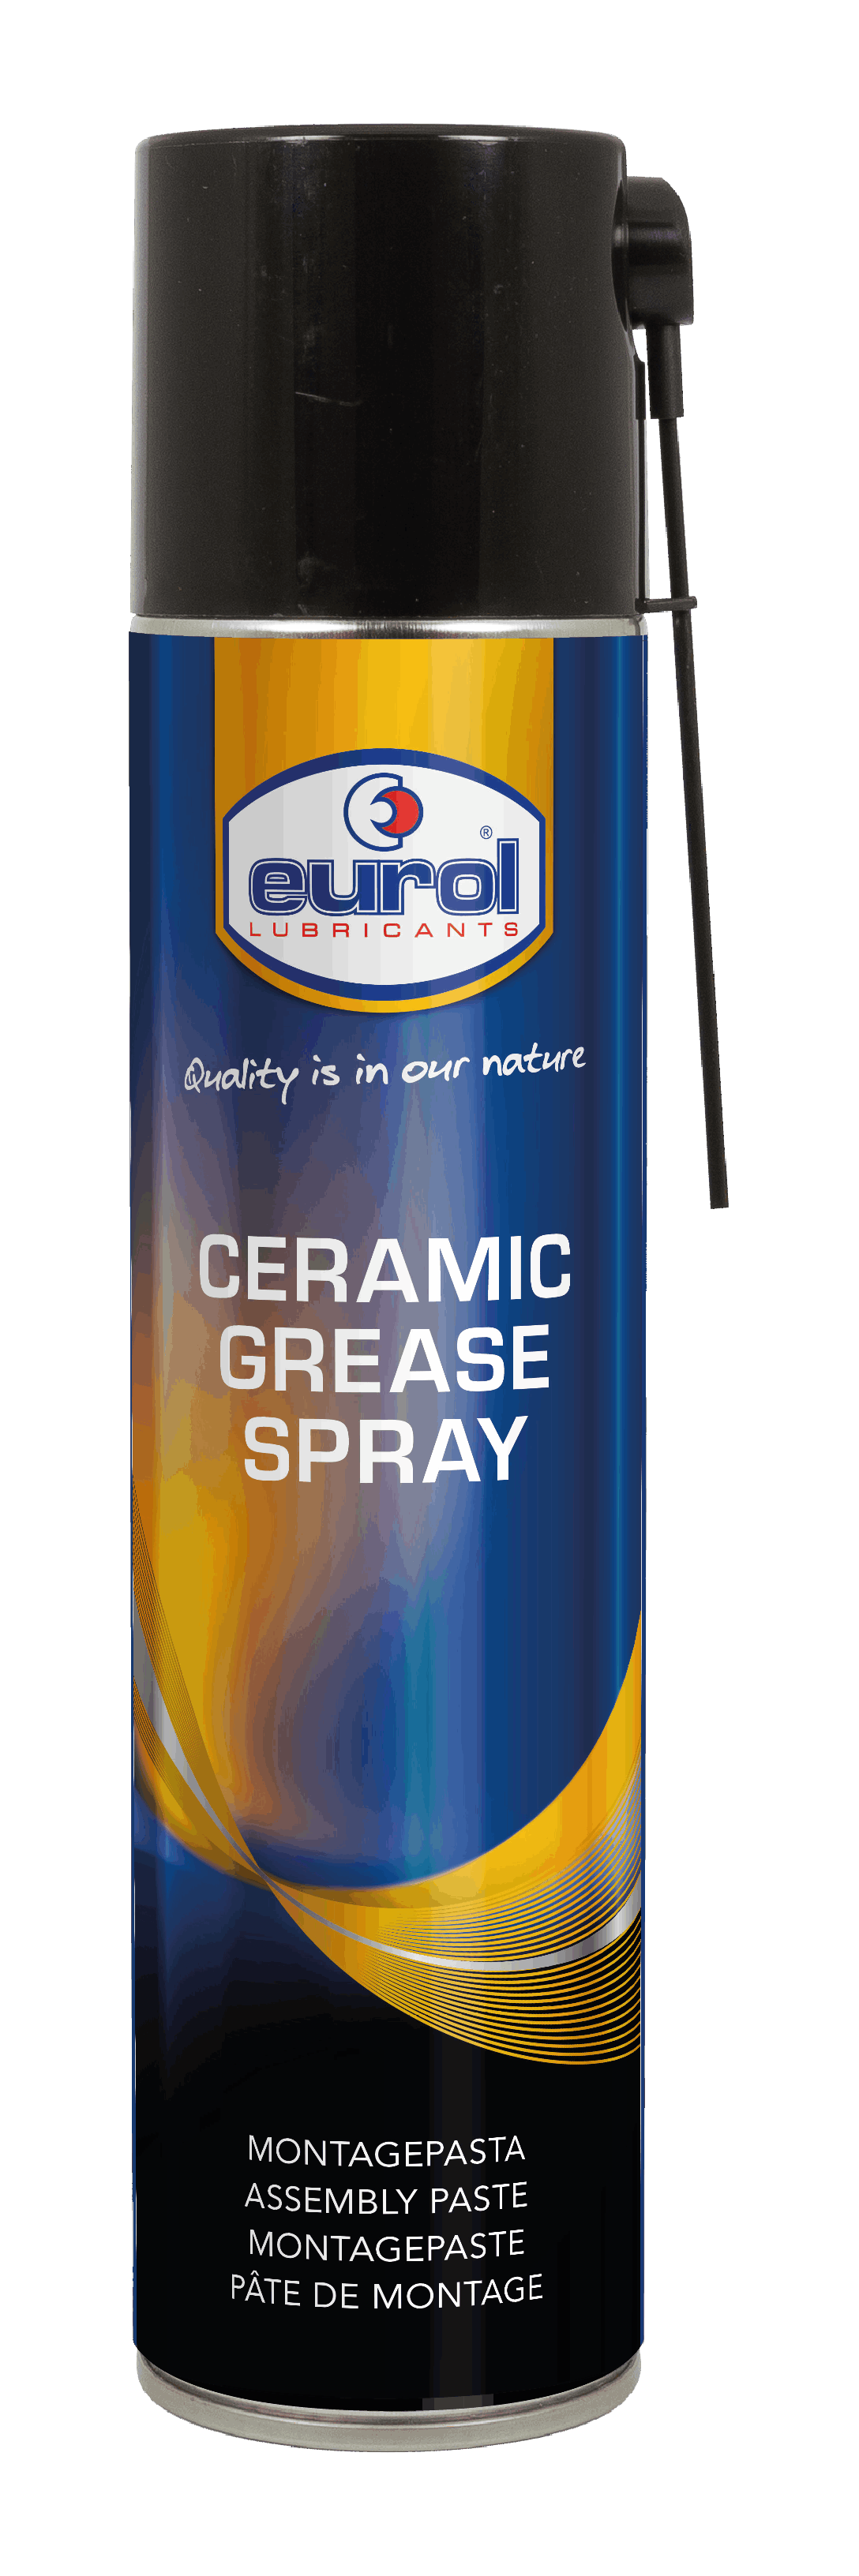 Ceramic Grease Spray